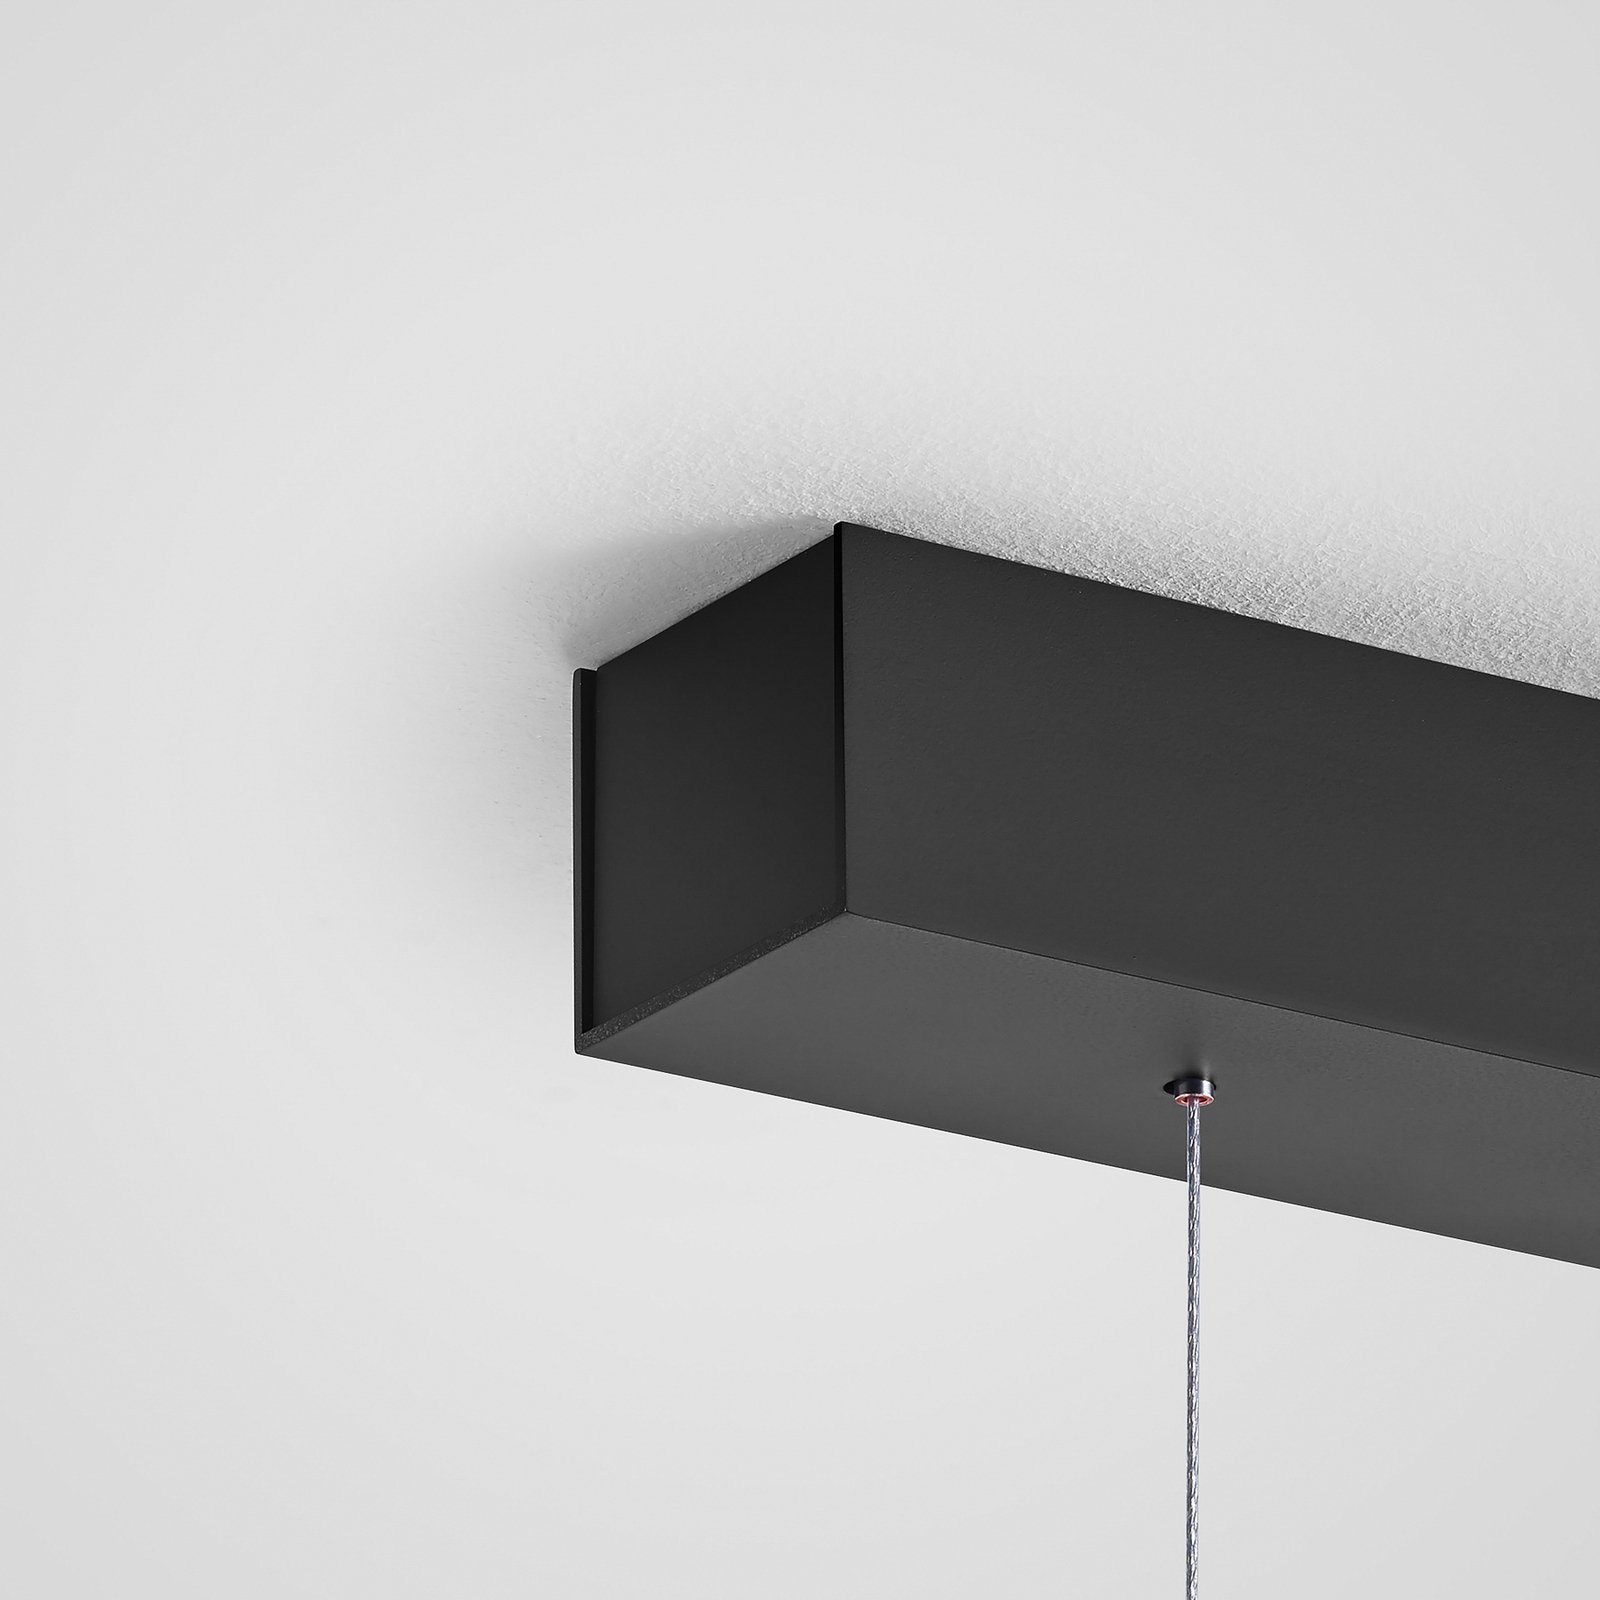 Quitani hanglamp Keijo, zwart/eiken, lengte 143 cm